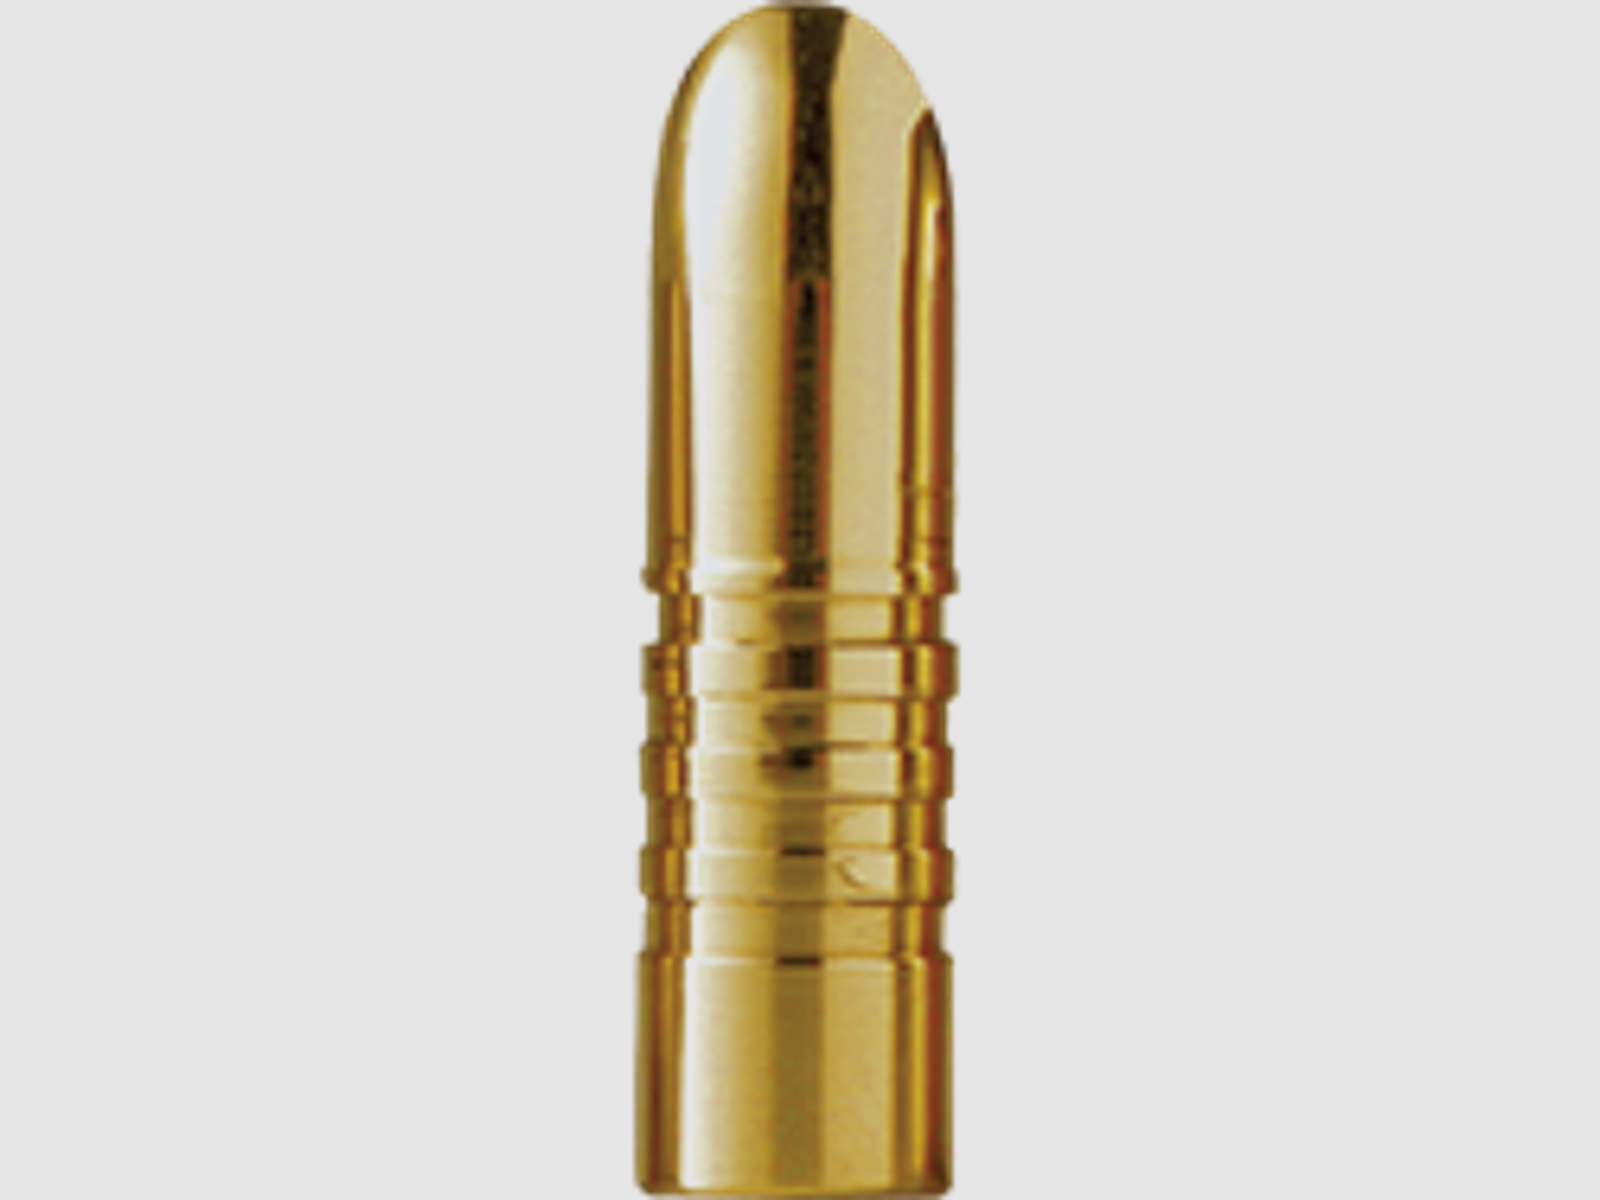 Barnes Geschoss .416 / 10,5mm 400GR Banded Solid 50 Stück